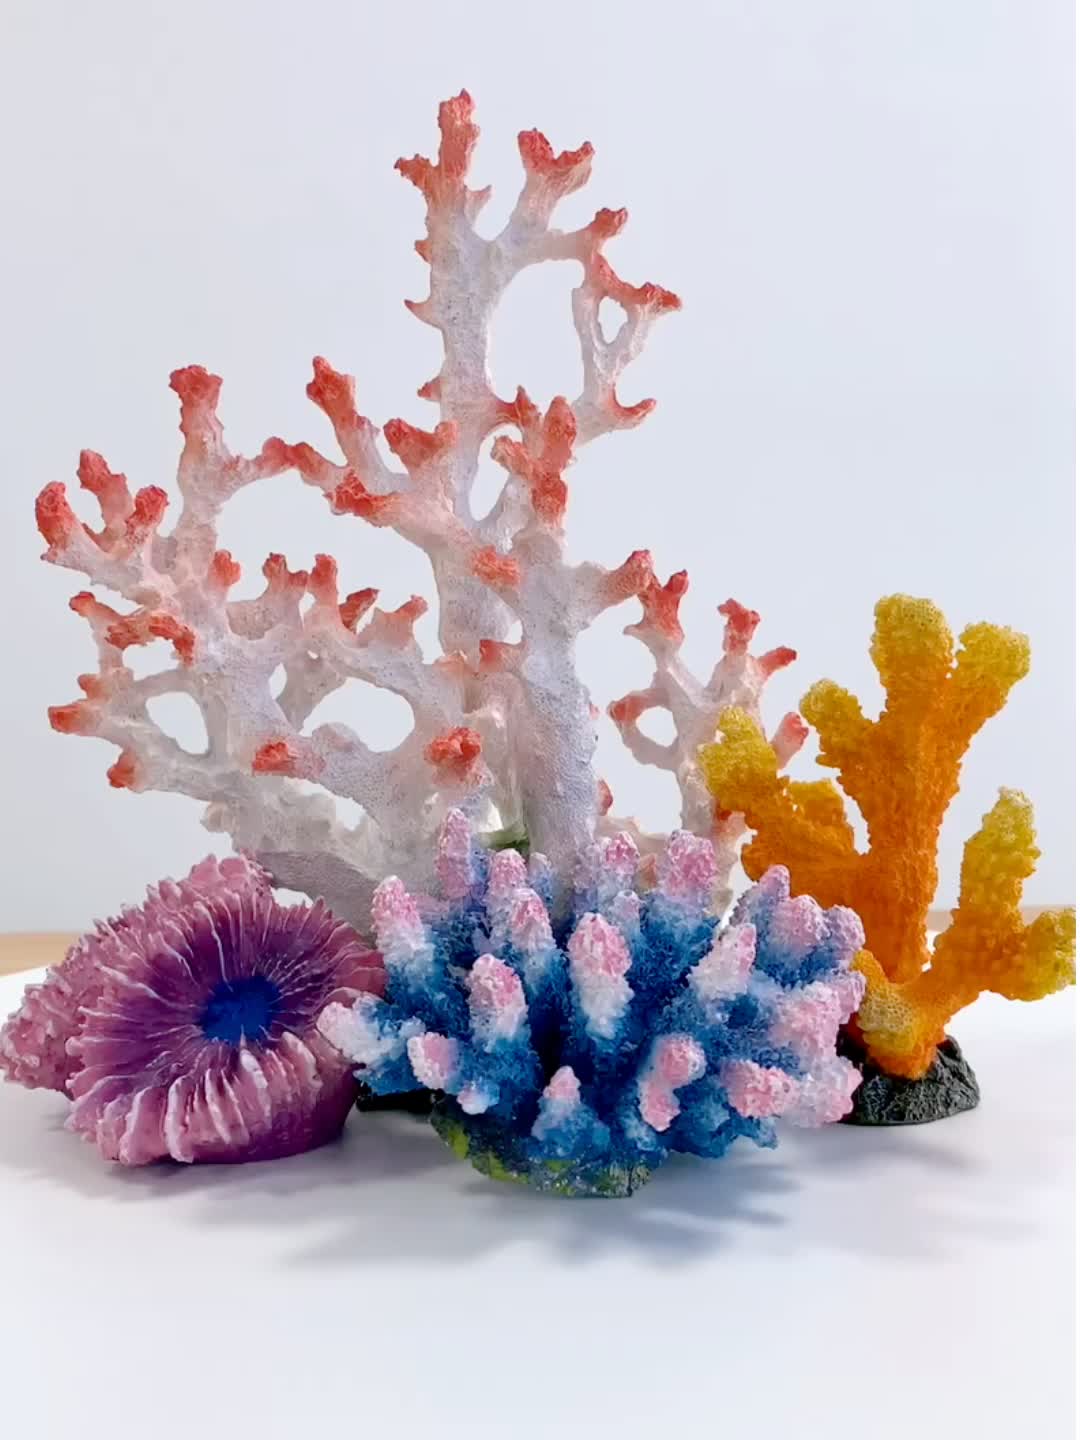 Виды кораллов и их взаимодействие с человеком